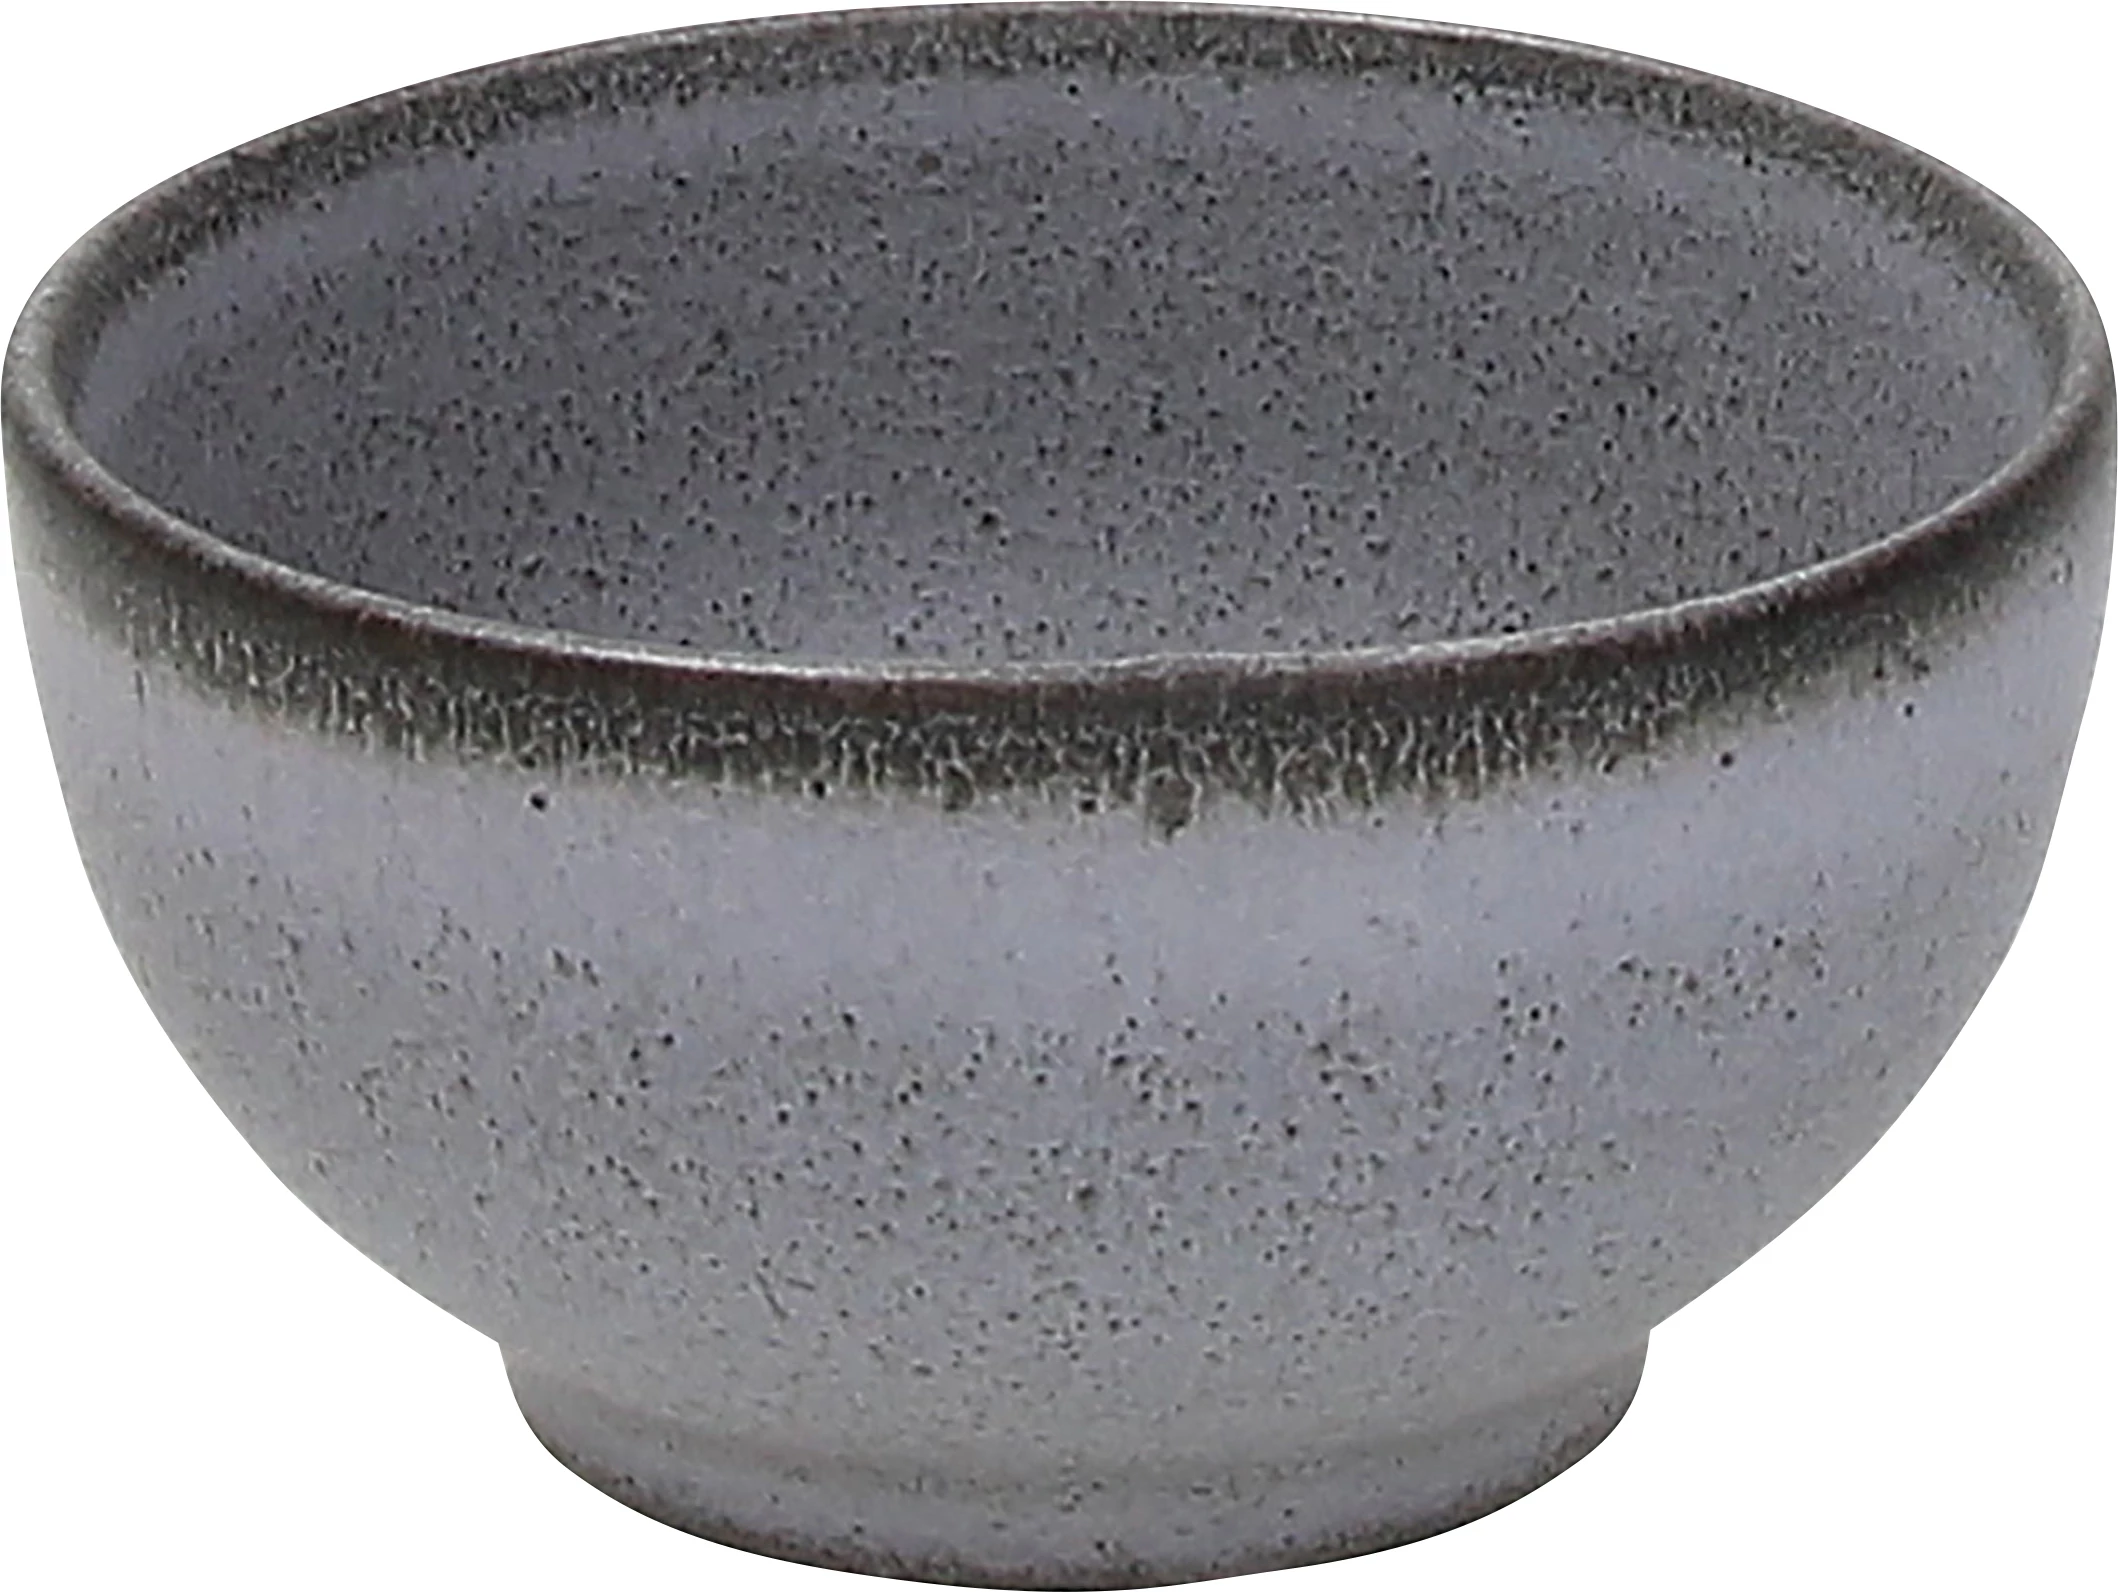 Tognana Terracotta skål, grå, 17 cl, ø9 cm